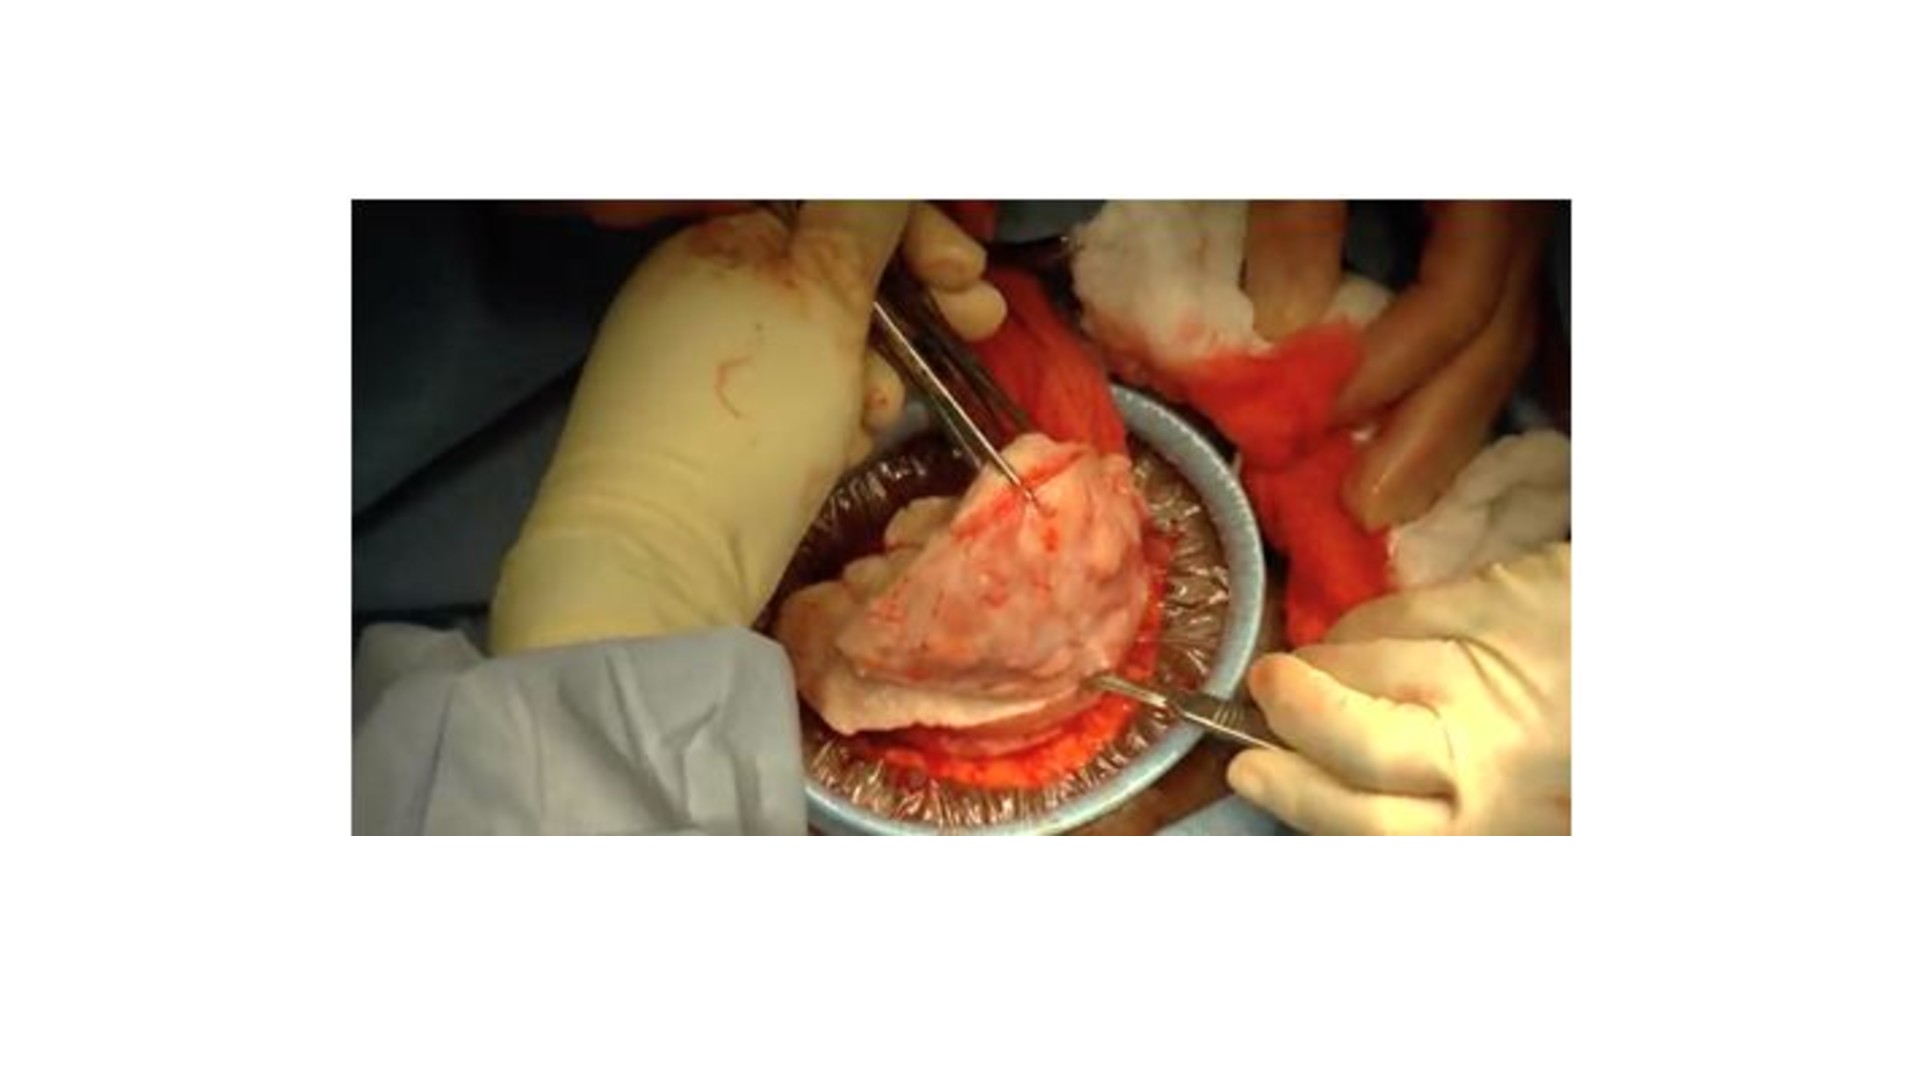 Ultra minilaparotomy myomectomy